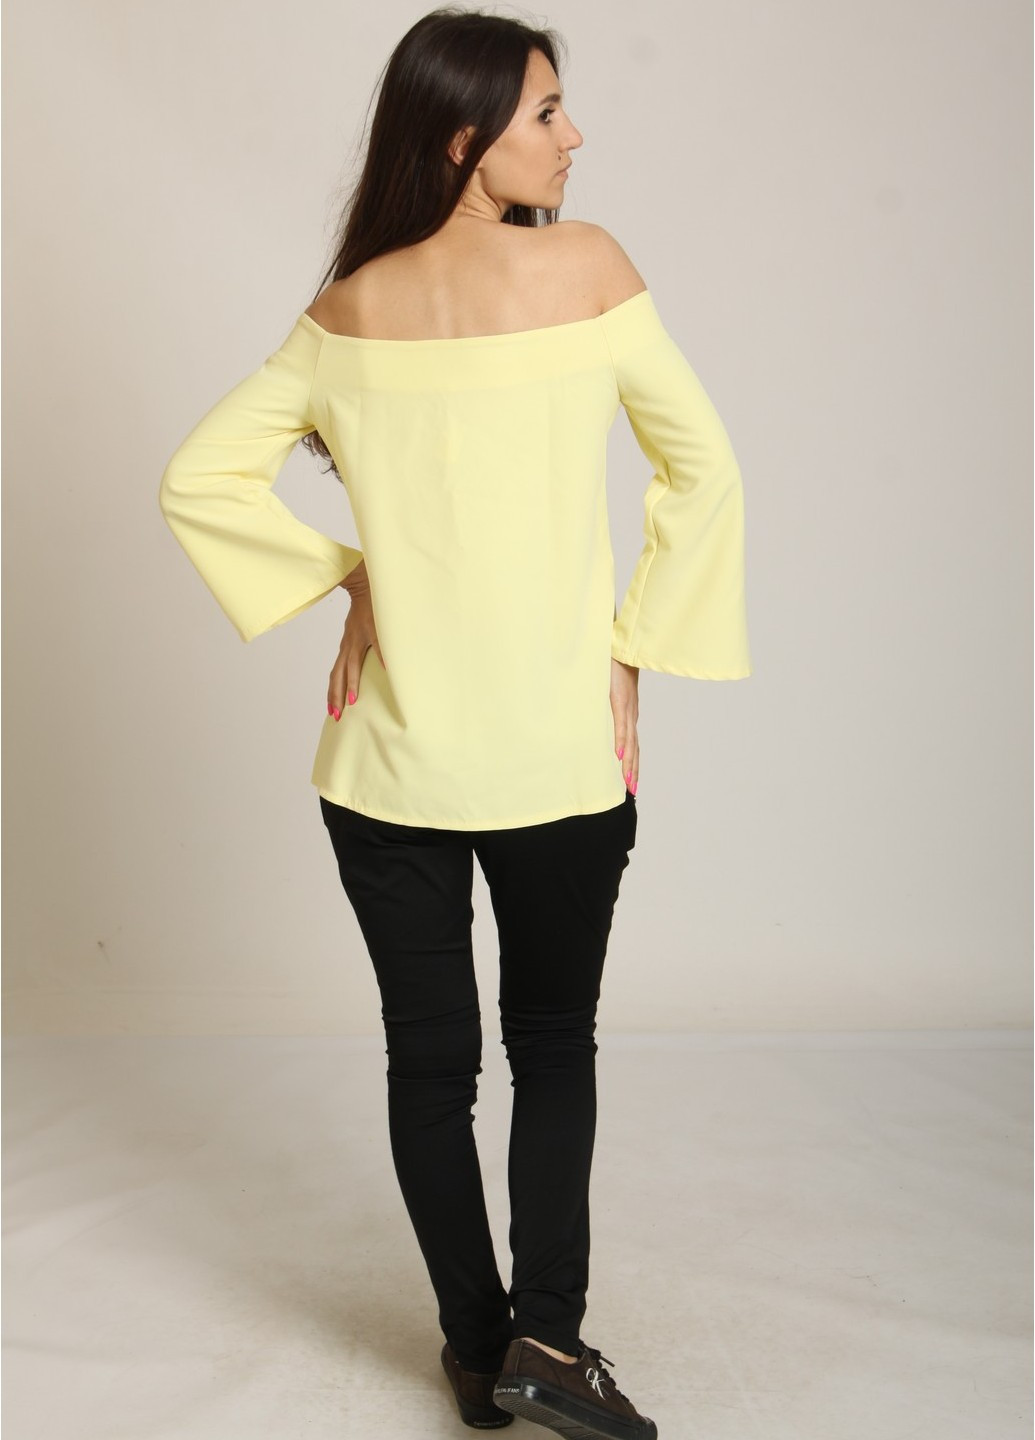 Жовта літня блуза Mtp